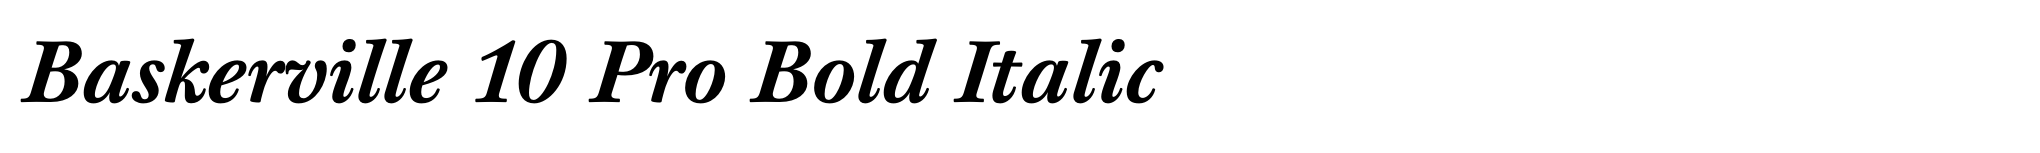 Baskerville 10 Pro Bold Italic image